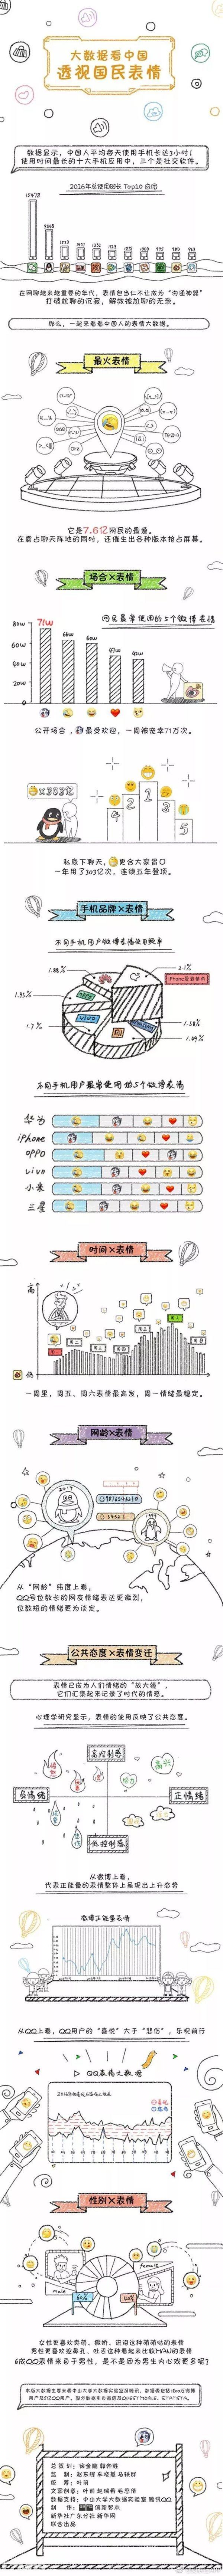 2017中国最火网络表情：“捂脸”“笑哭”“二哈”等上榜